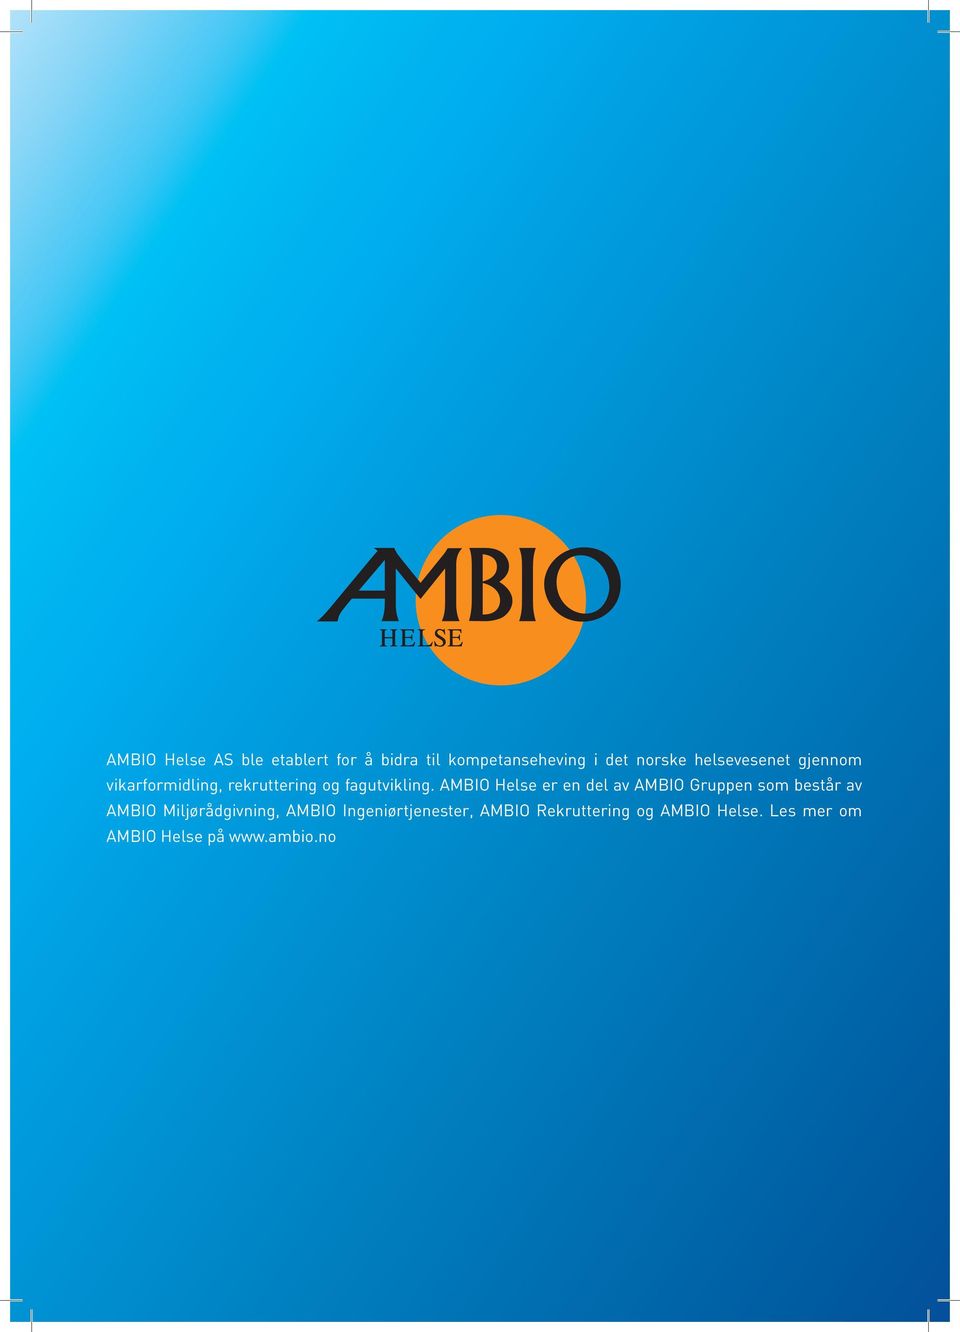 AMBIO Helse er en del av AMBIO Gruppen som består av AMBIO Miljørådgivning,